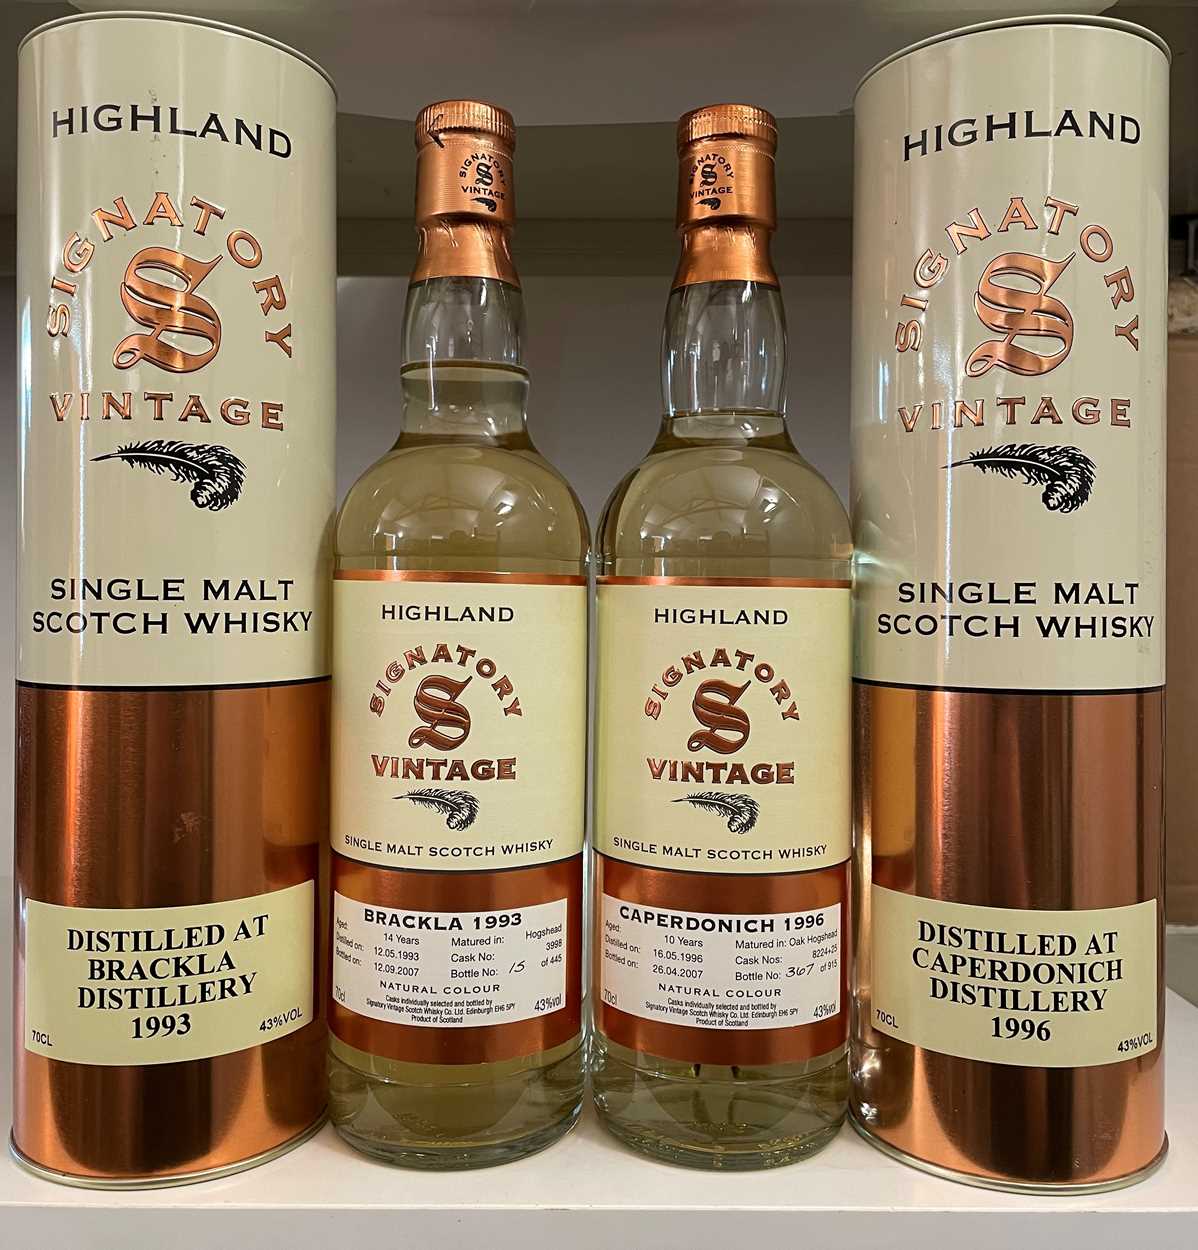 Brackla Highland Single Malt Scotch Whisky